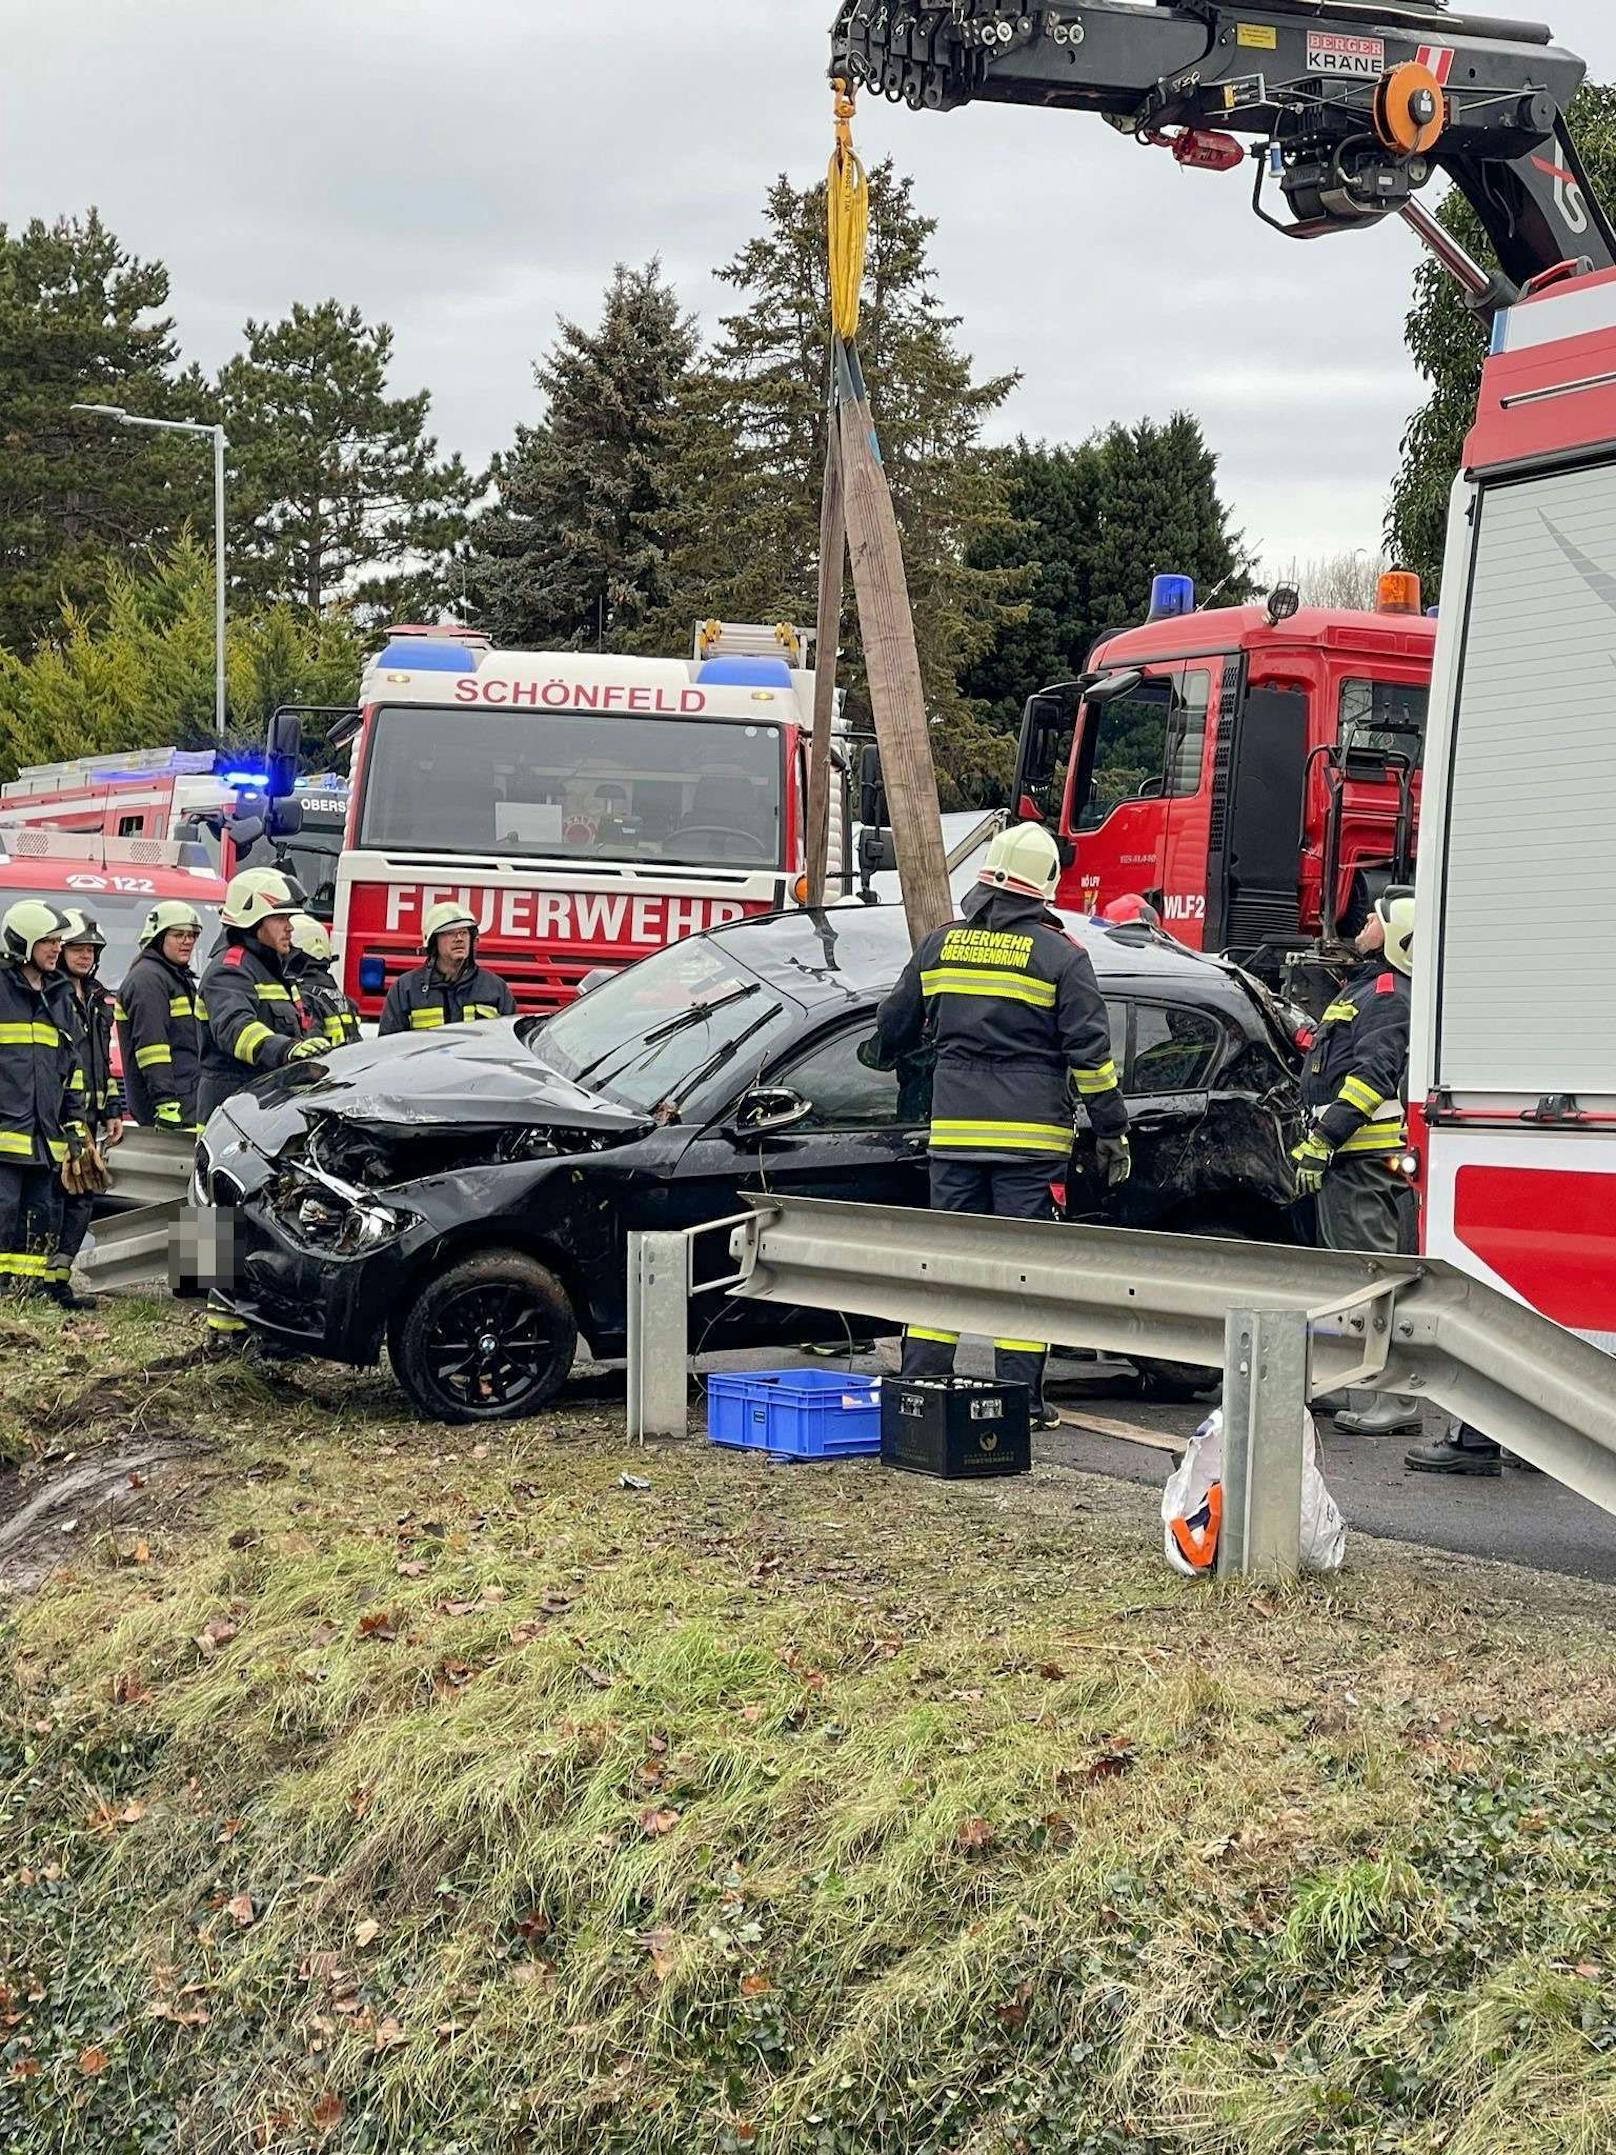 Ein tragischer Verkehrsunfall ereignete sich am 24. Dezember gegen 08:20 Uhr in Untersiebenbrunn. Eine 36-jährige Lenkerin verunfallte aus noch unklarer Ursache mit ihrem BMW auf der Siebenbrunnerstraße nahe dem Feuerwehrhaus. Sie starb noch an der Unfallstelle.